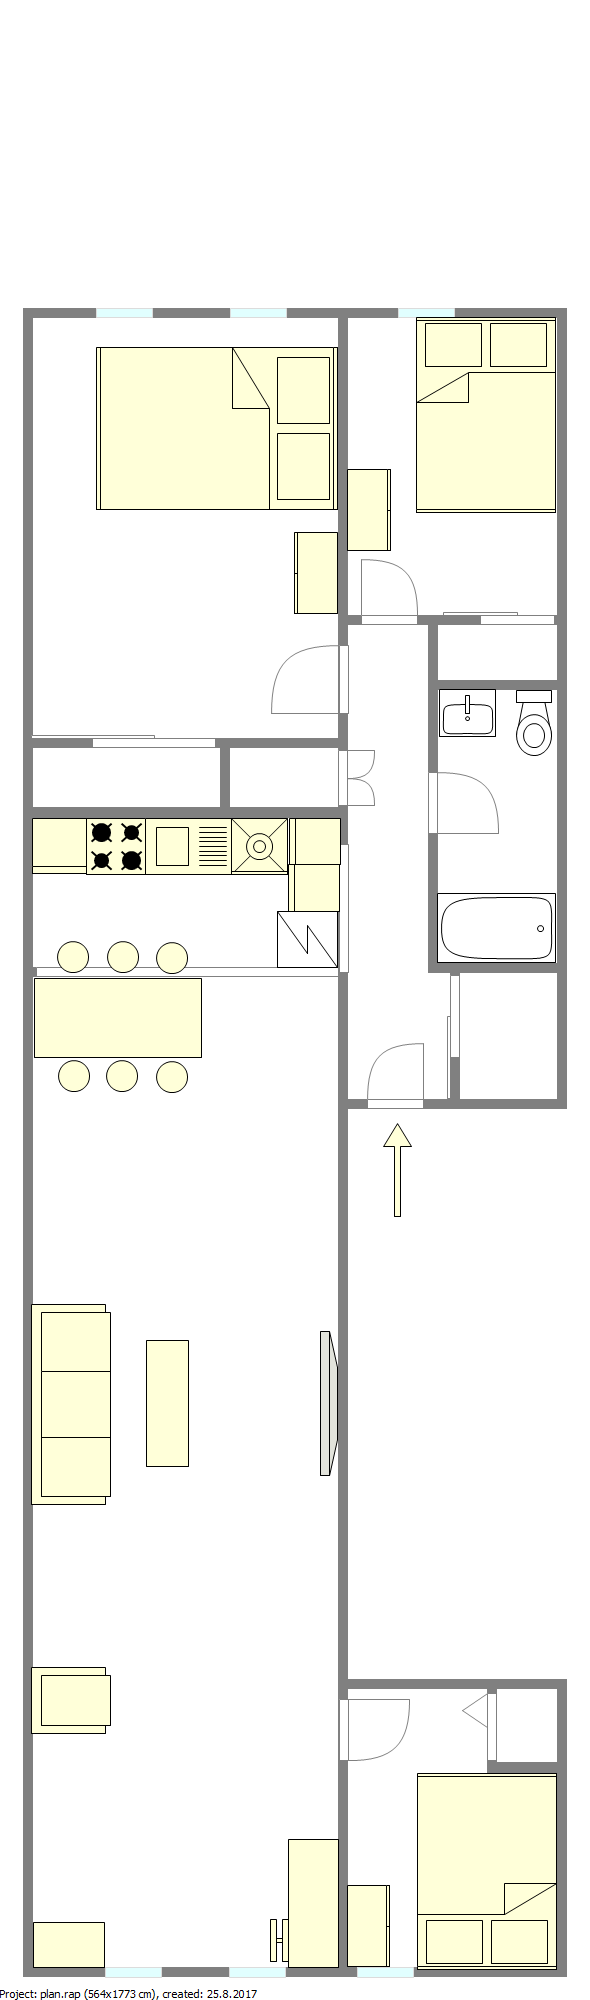 Apartamento Astoria - Plano interativo